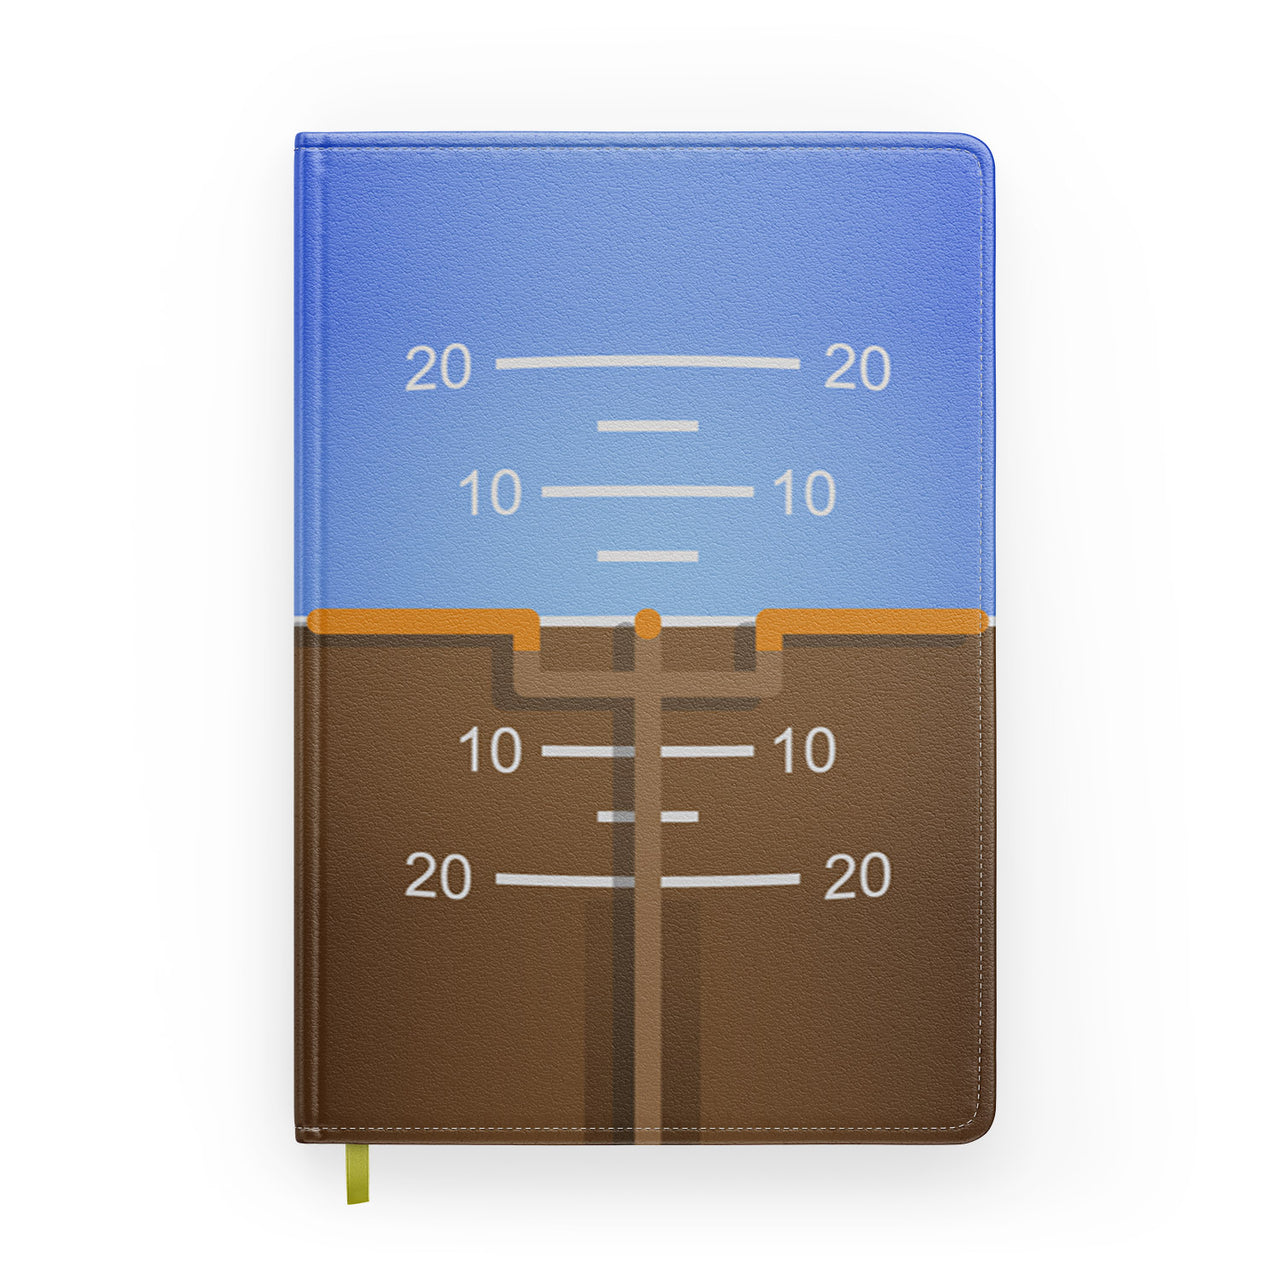 Gyro Horizon 2 Designed Notebooks